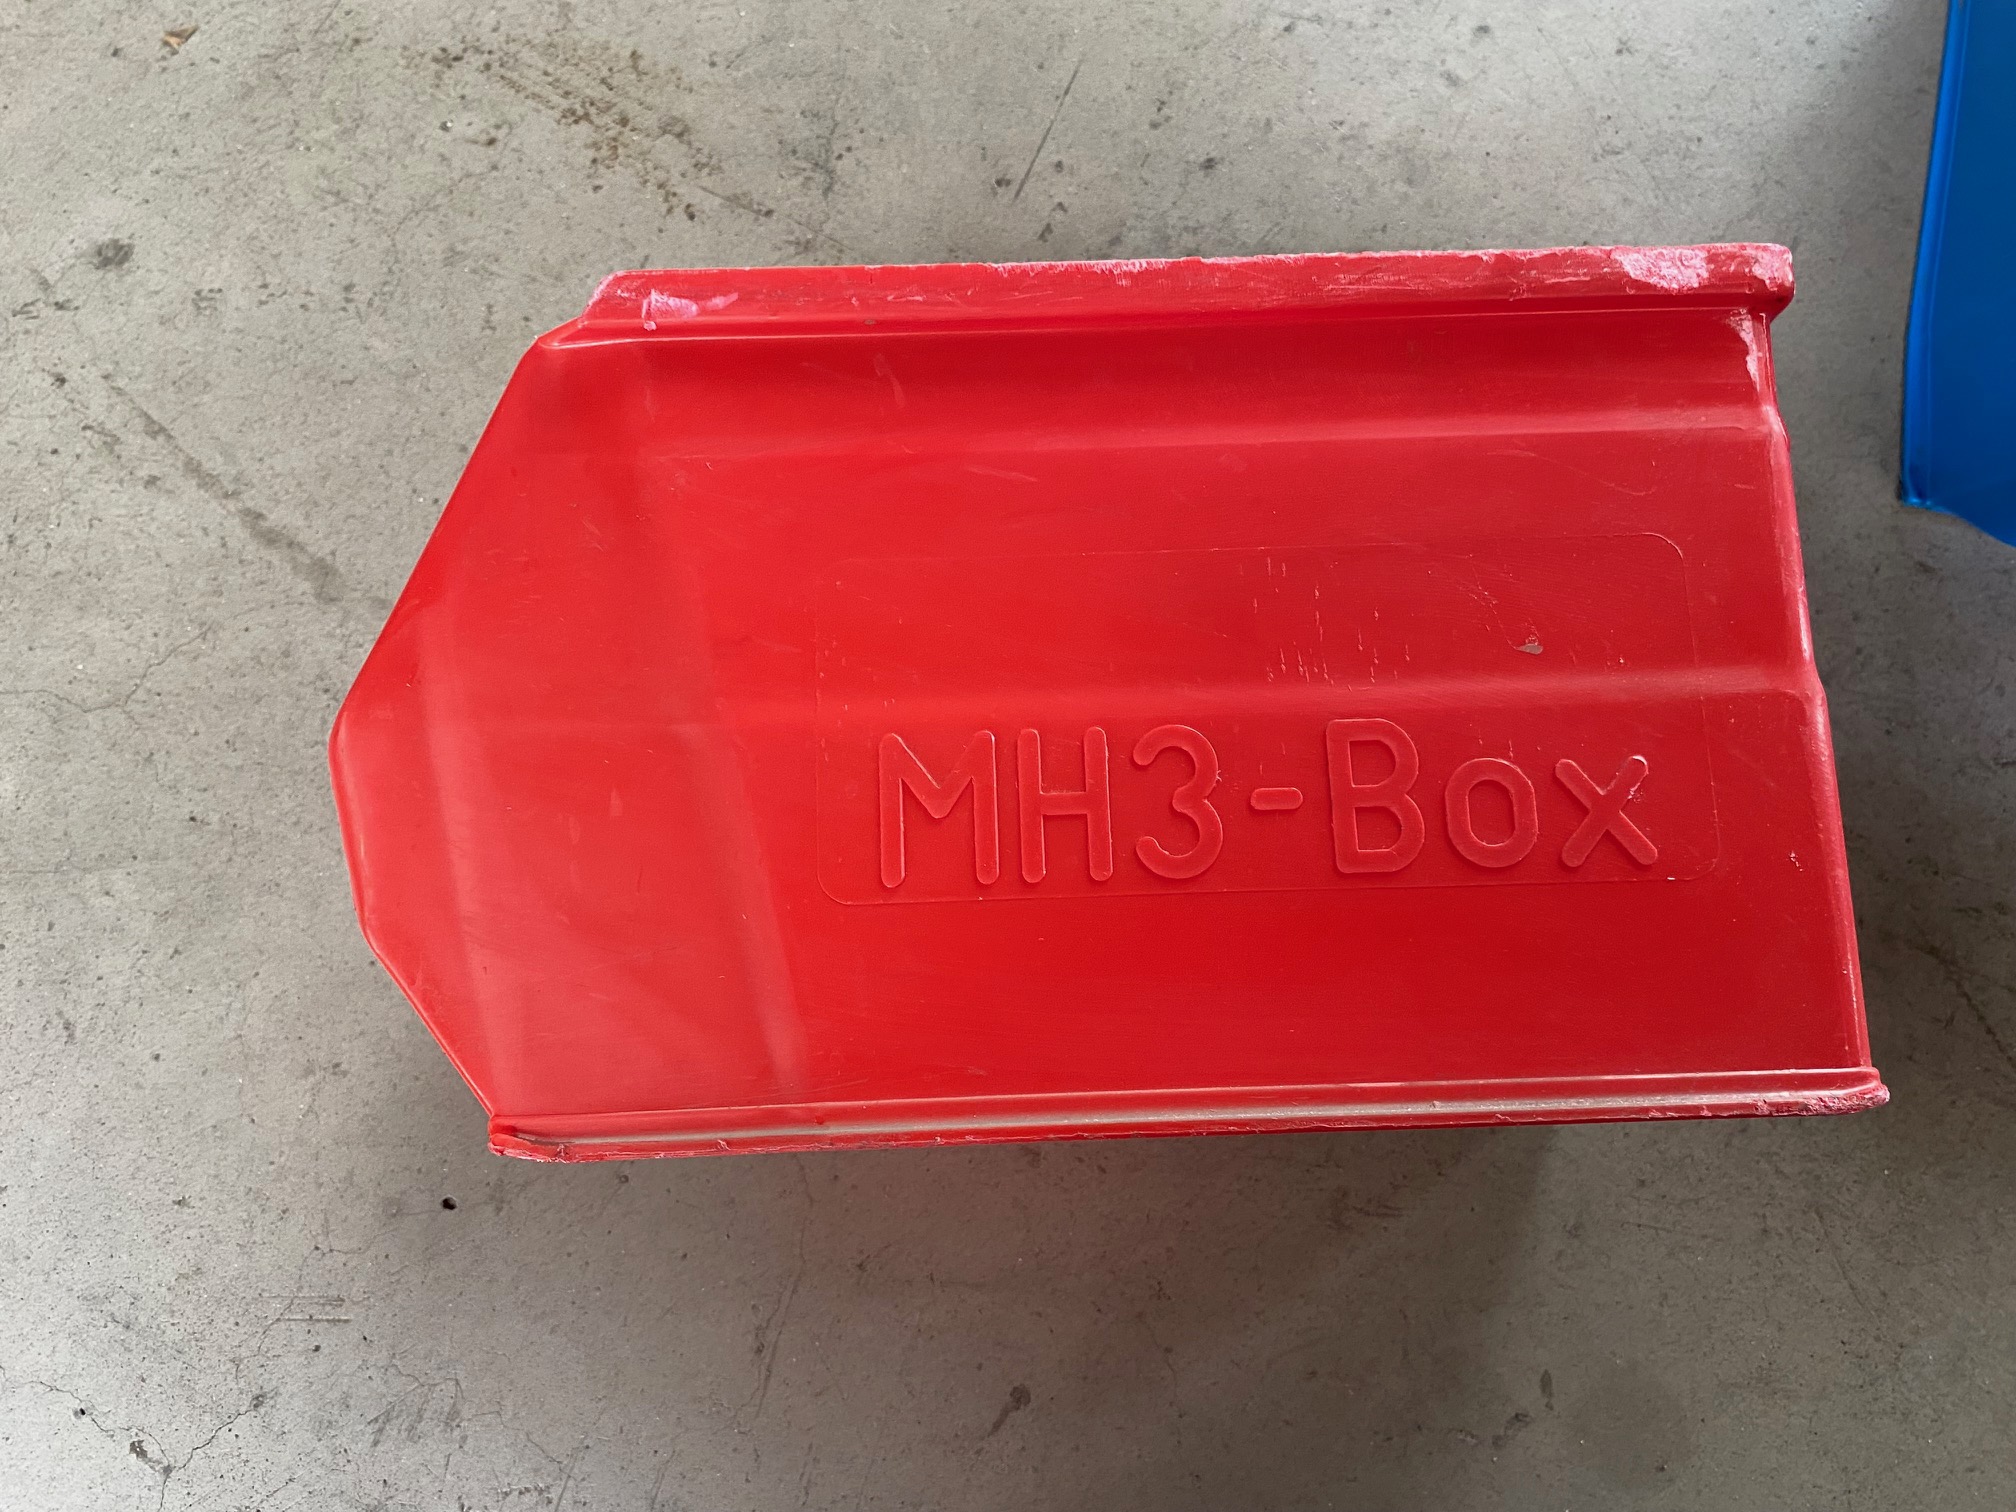 1500 Stk. Kunststoffkisten MH3-BOX